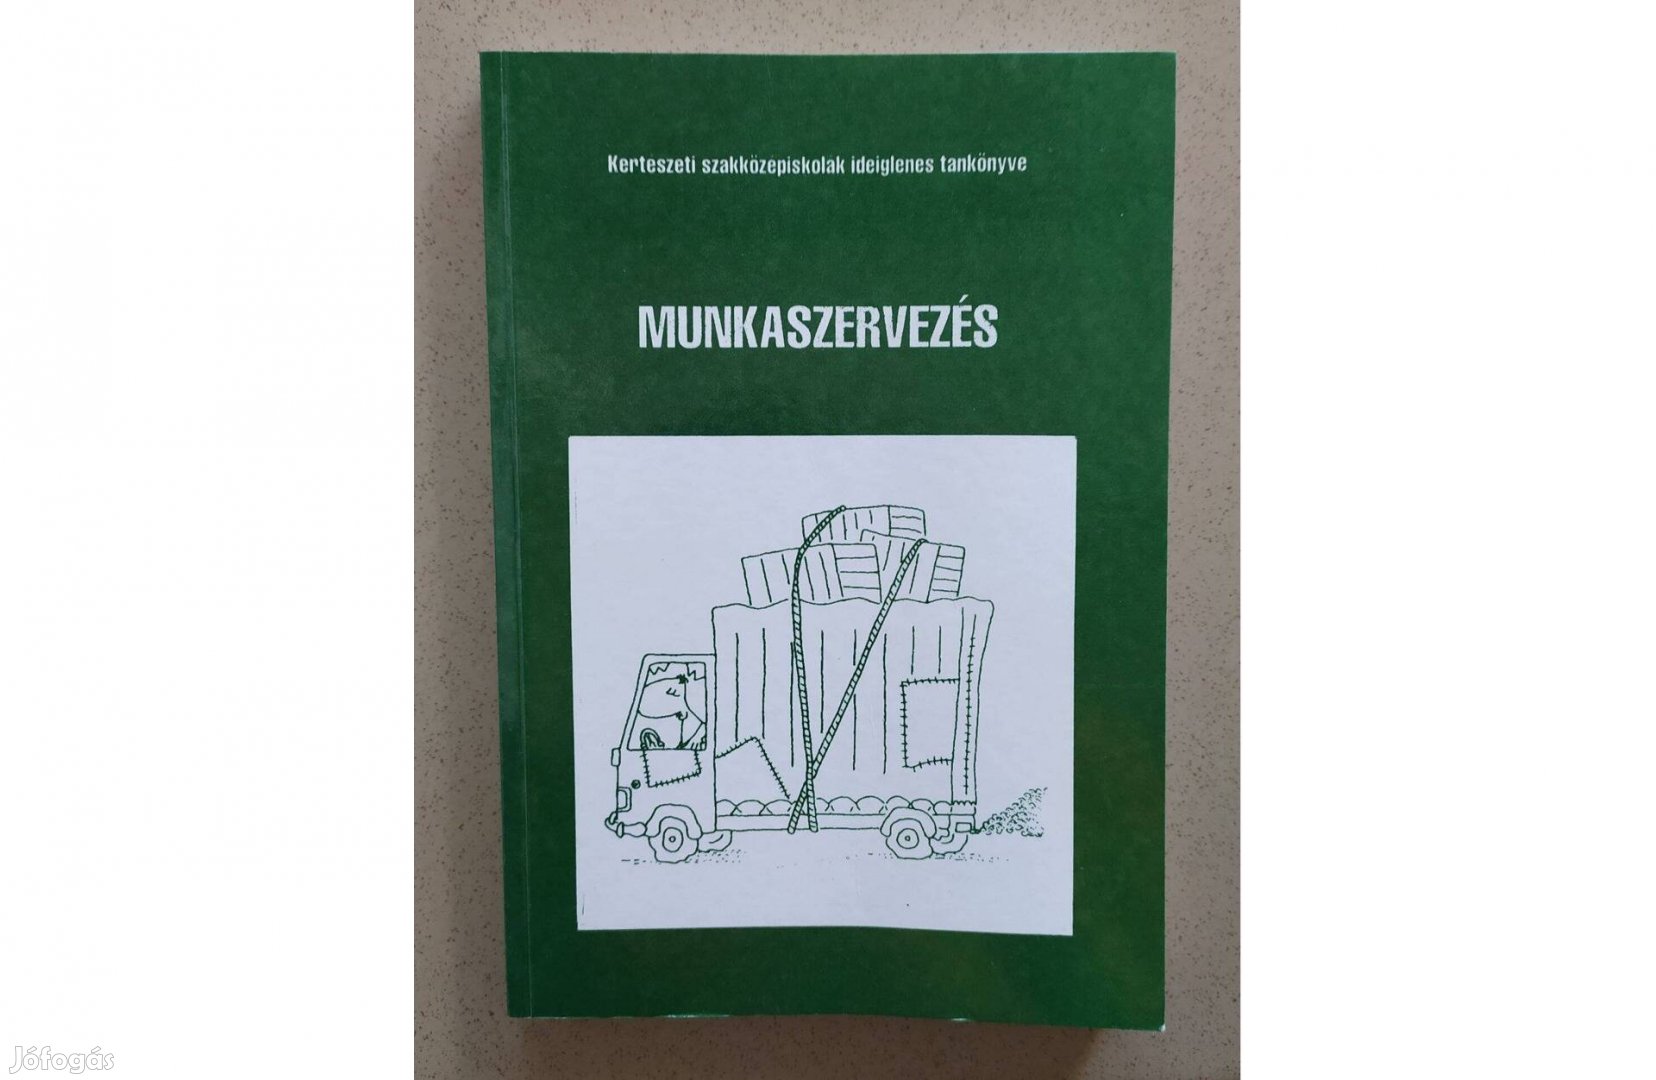 Munkaszervezés tankönyv szakkönyv könyv kertész iskola